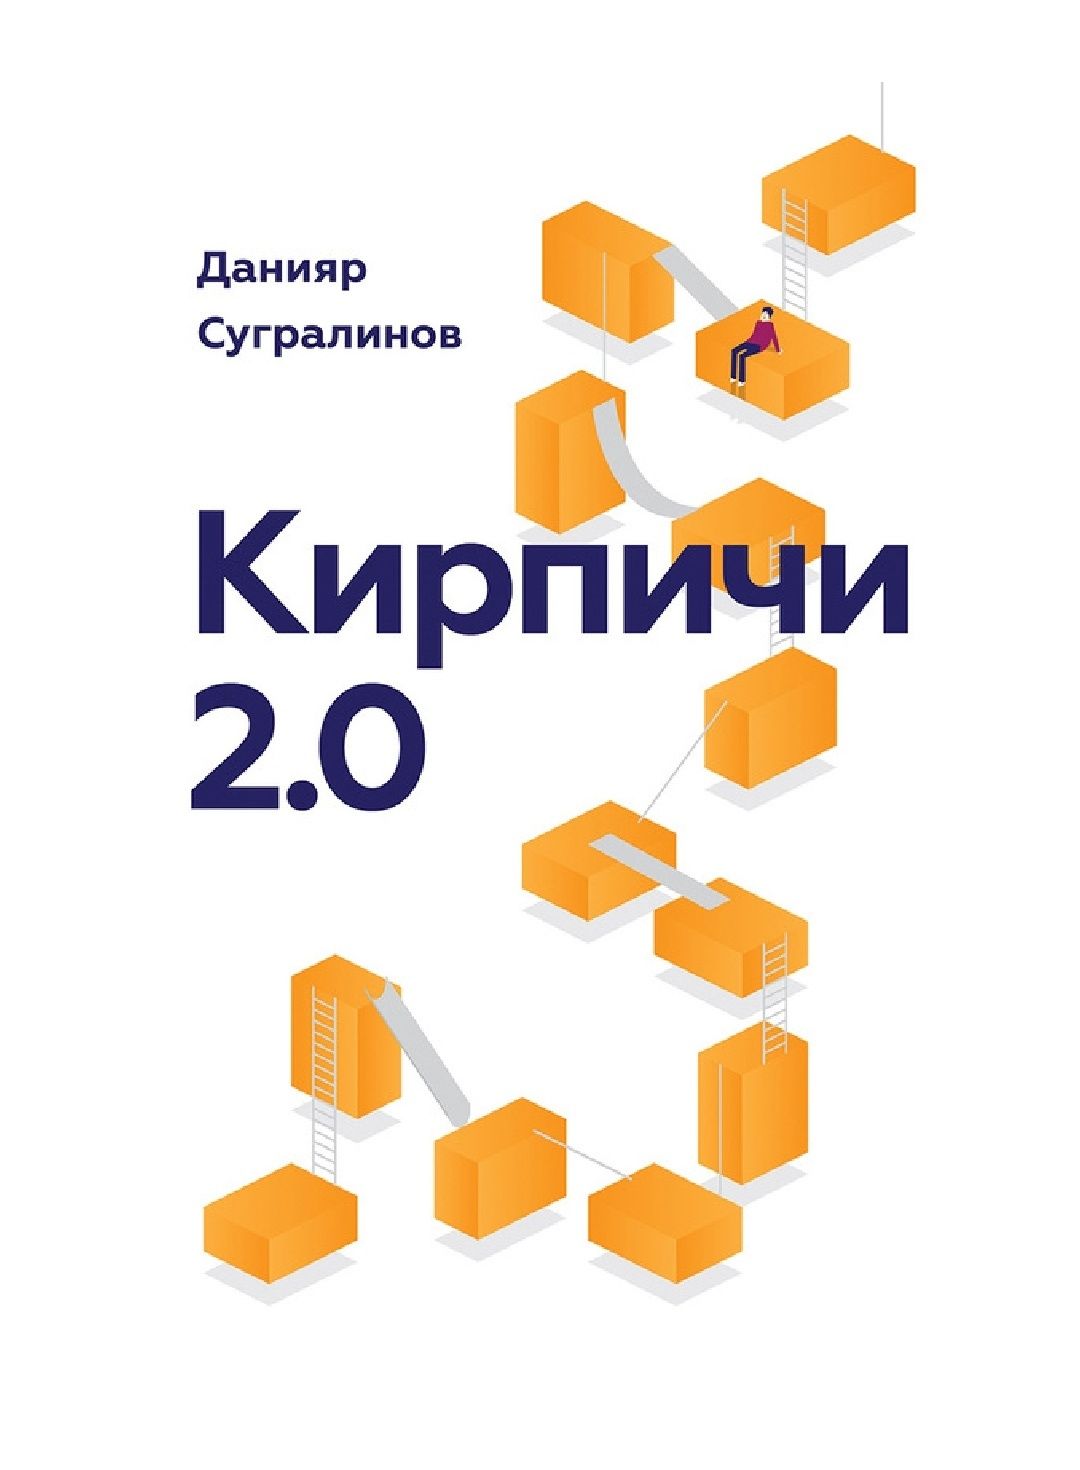 Кирпичи 2.0 есть 2 части
Данияр Саматович Сугралинов

#СовременнаяРусс